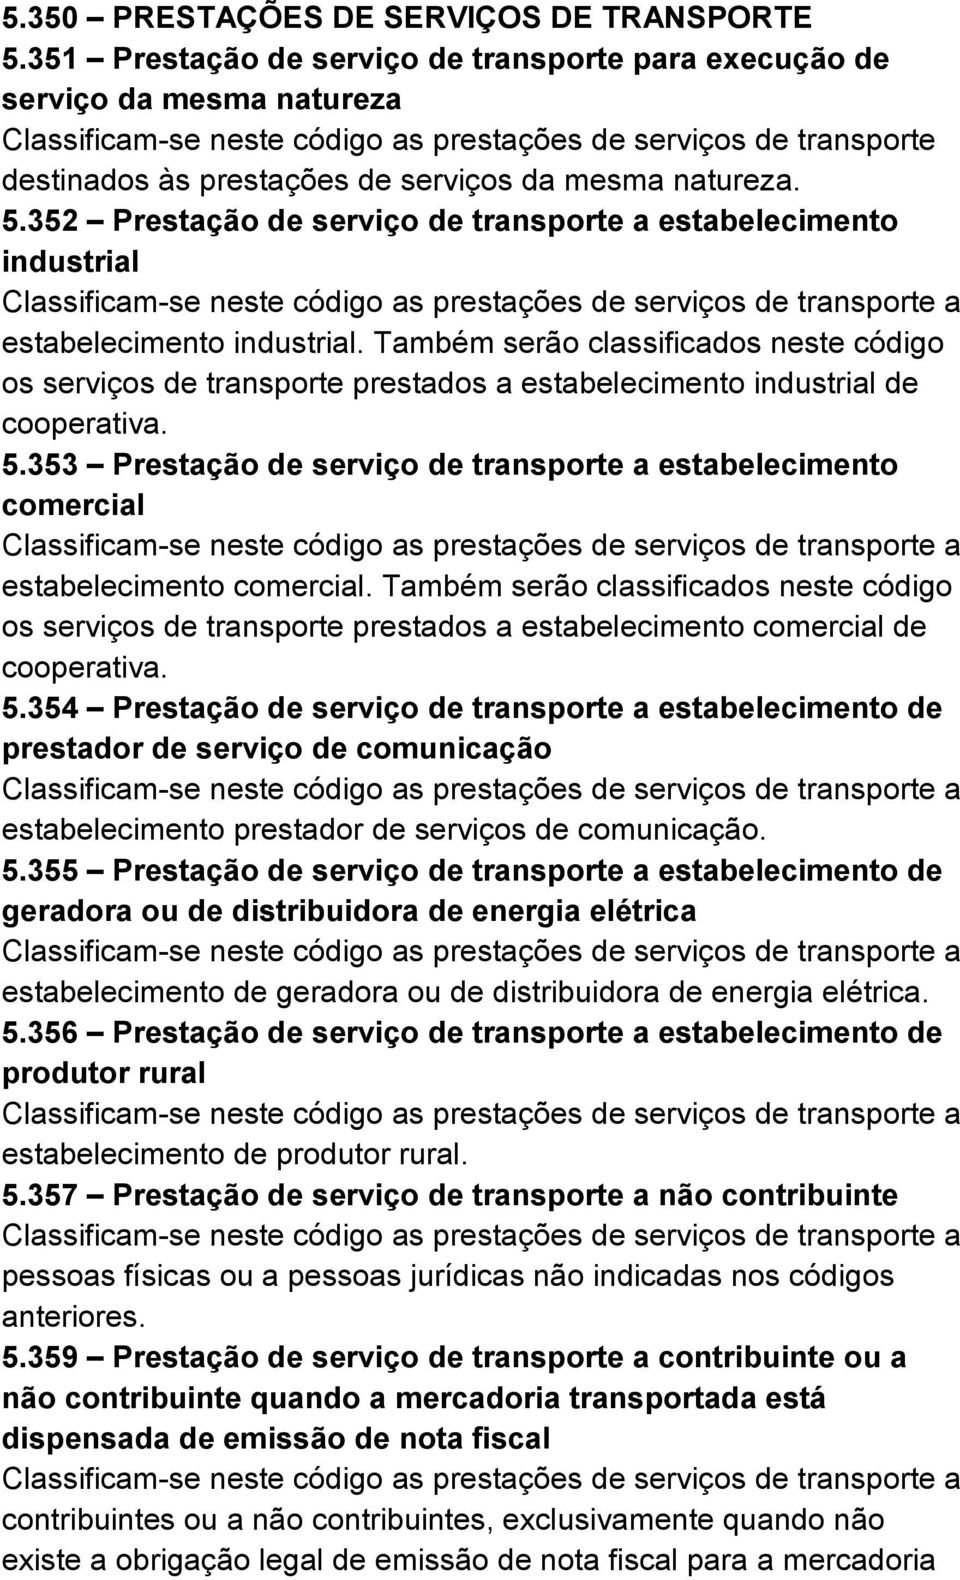 353 Prestação de serviço de transporte a estabelecimento comercial estabelecimento comercial.